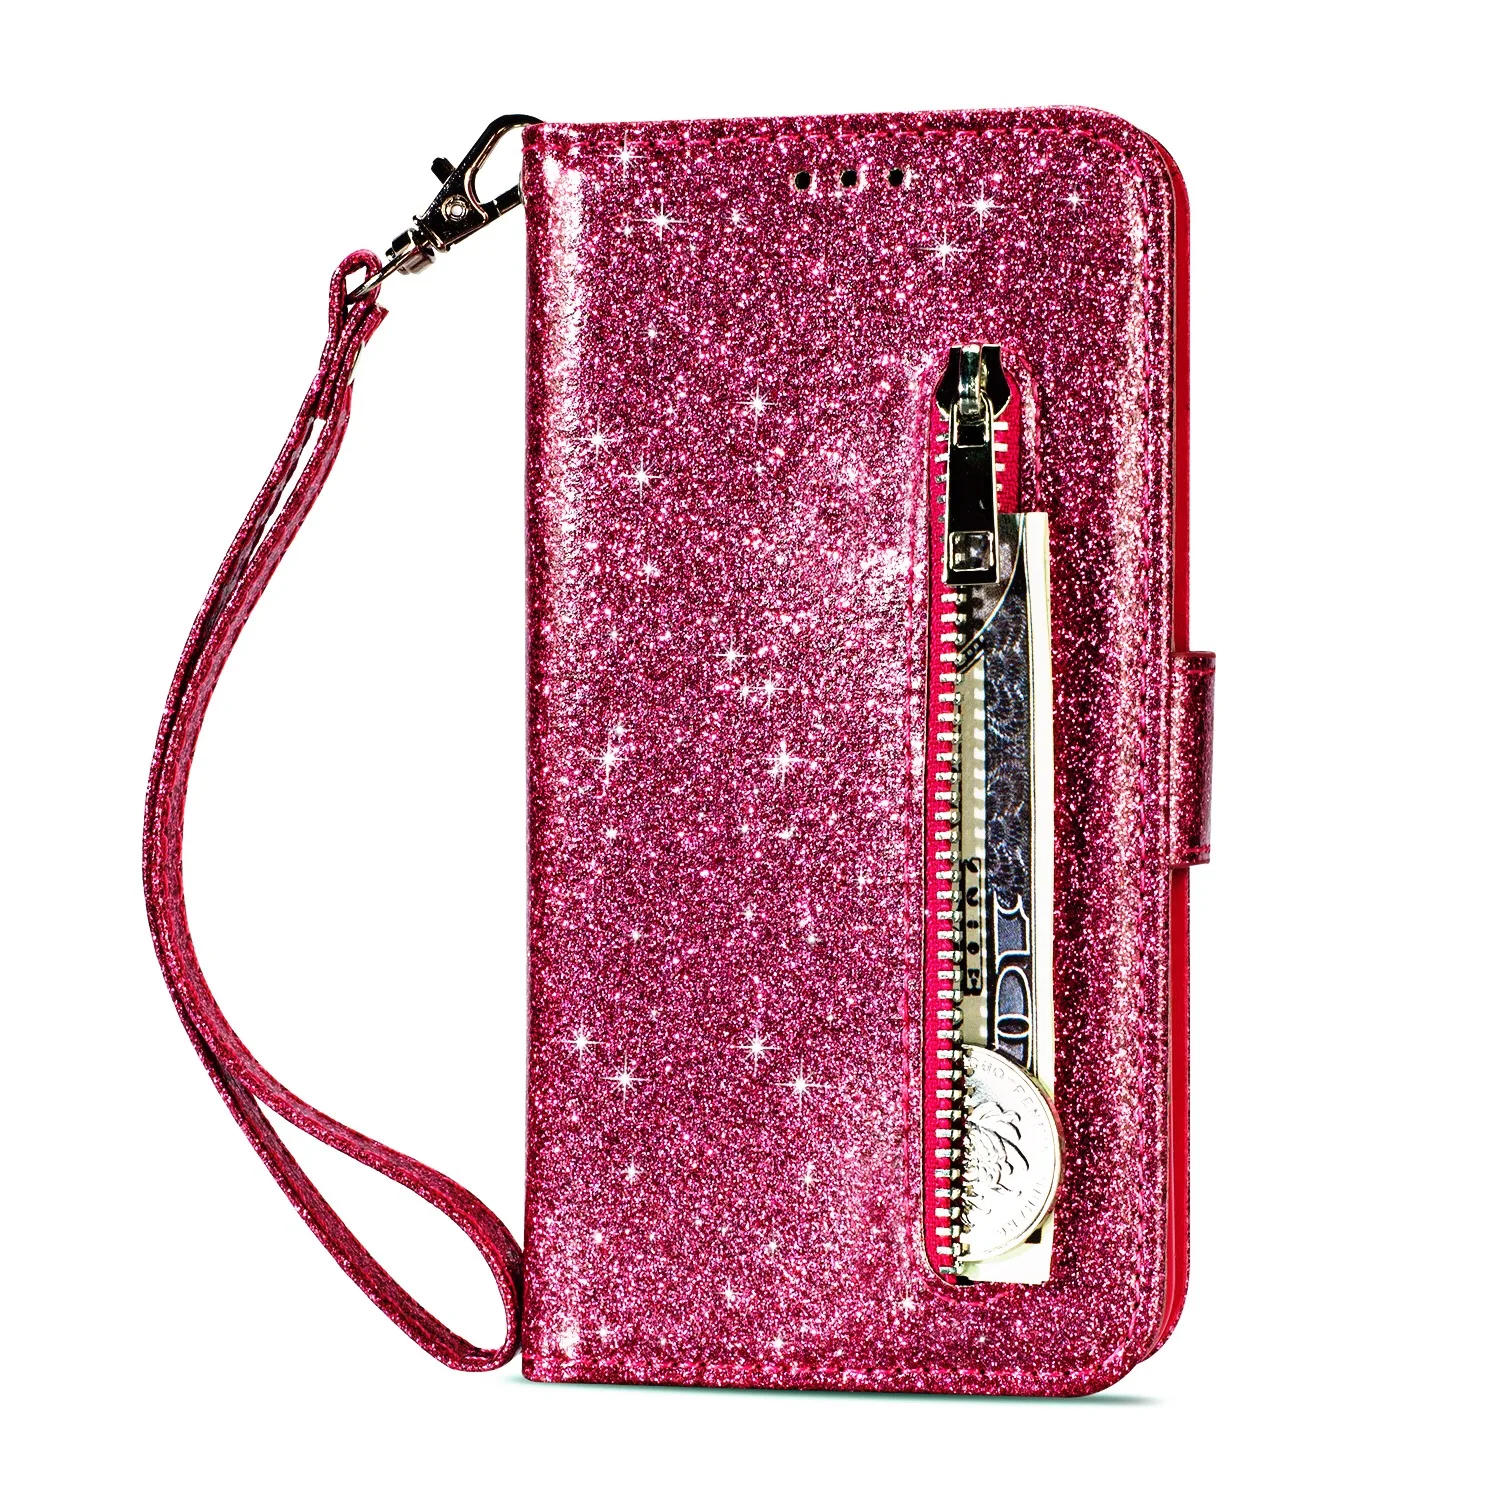 Роскошный чехол сверкающий с блестками для LG K10 кожаный бумажник чехол для телефона Флип Бумажник кожаный чехол для LG K8 K8 K10 - Цвет: Rose Red